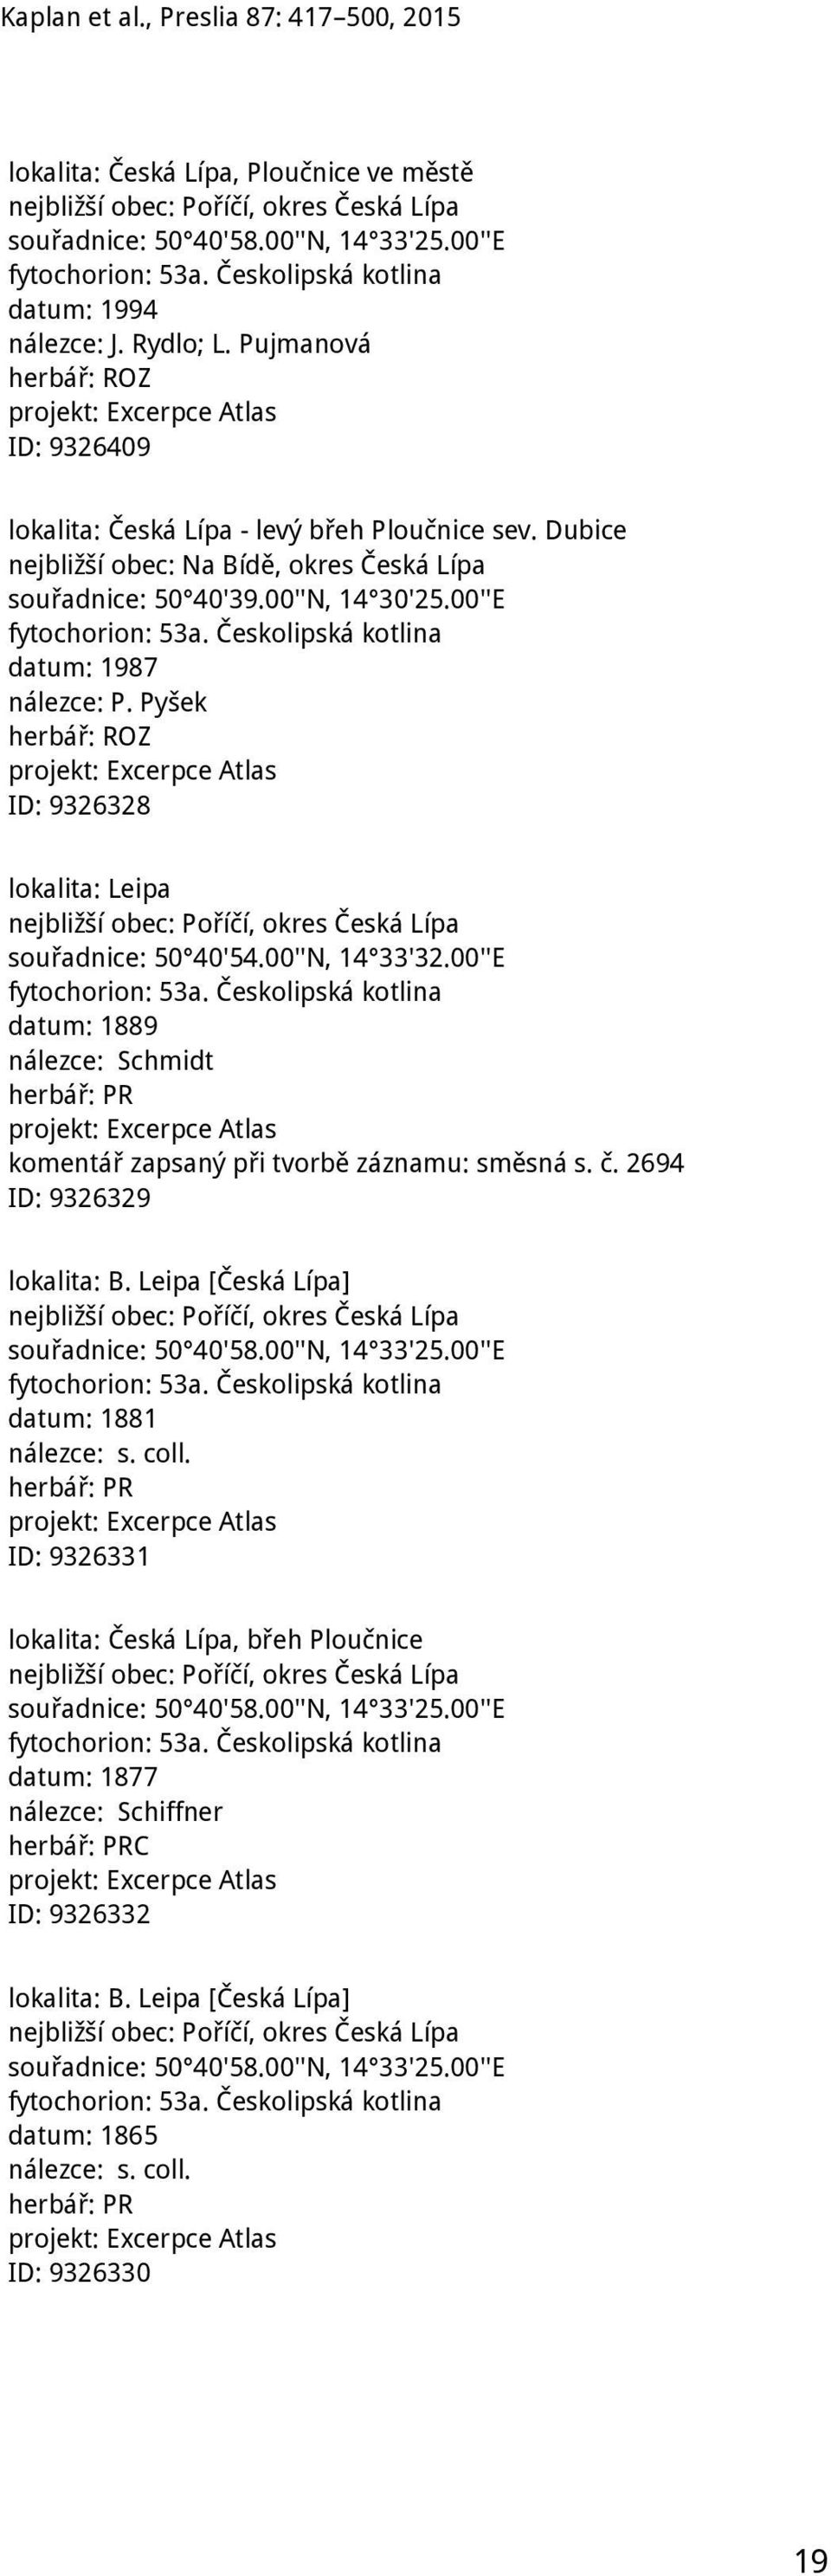 Českolipská kotlina datum: 1987 nálezce: P. Pyšek ID: 9326328 lokalita: Leipa nejbližší obec: Poříčí, okres Česká Lípa souřadnice: 50 40'54.00''N, 14 33'32.00''E fytochorion: 53a.